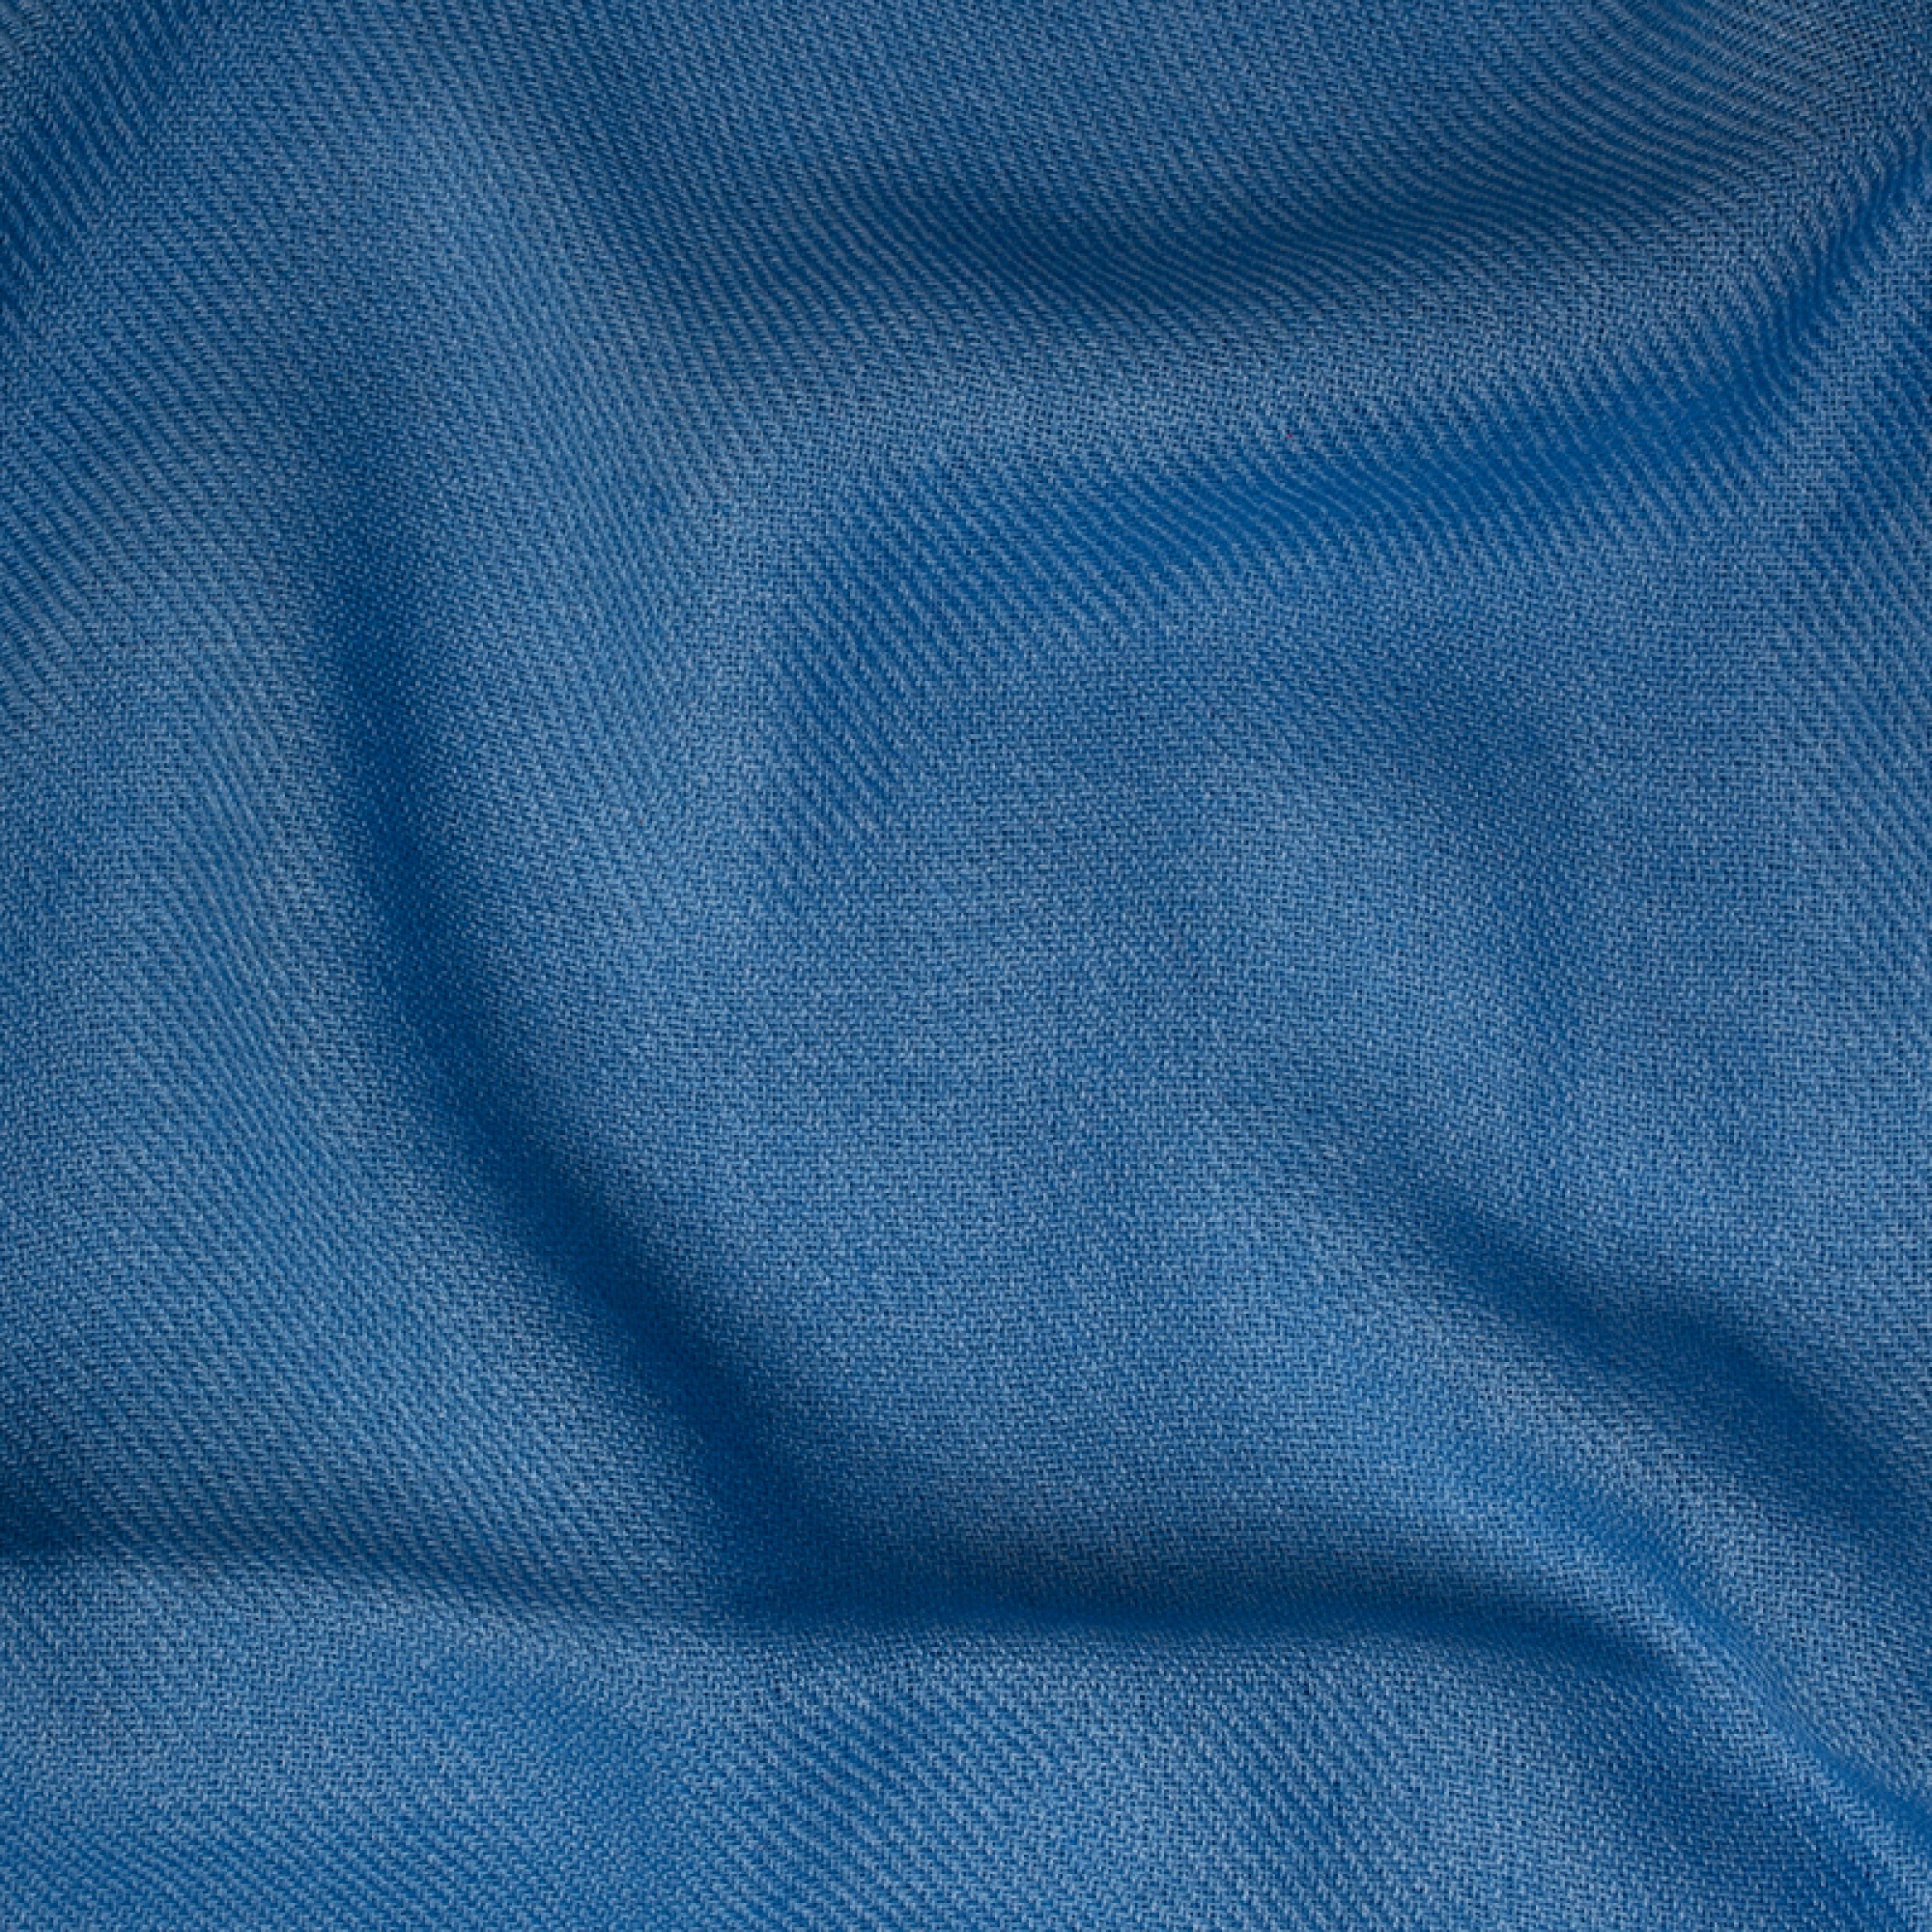 Cachemire accessoires couvertures plaids toodoo plain xl 240 x 260 bleu miro 240 x 260 cm